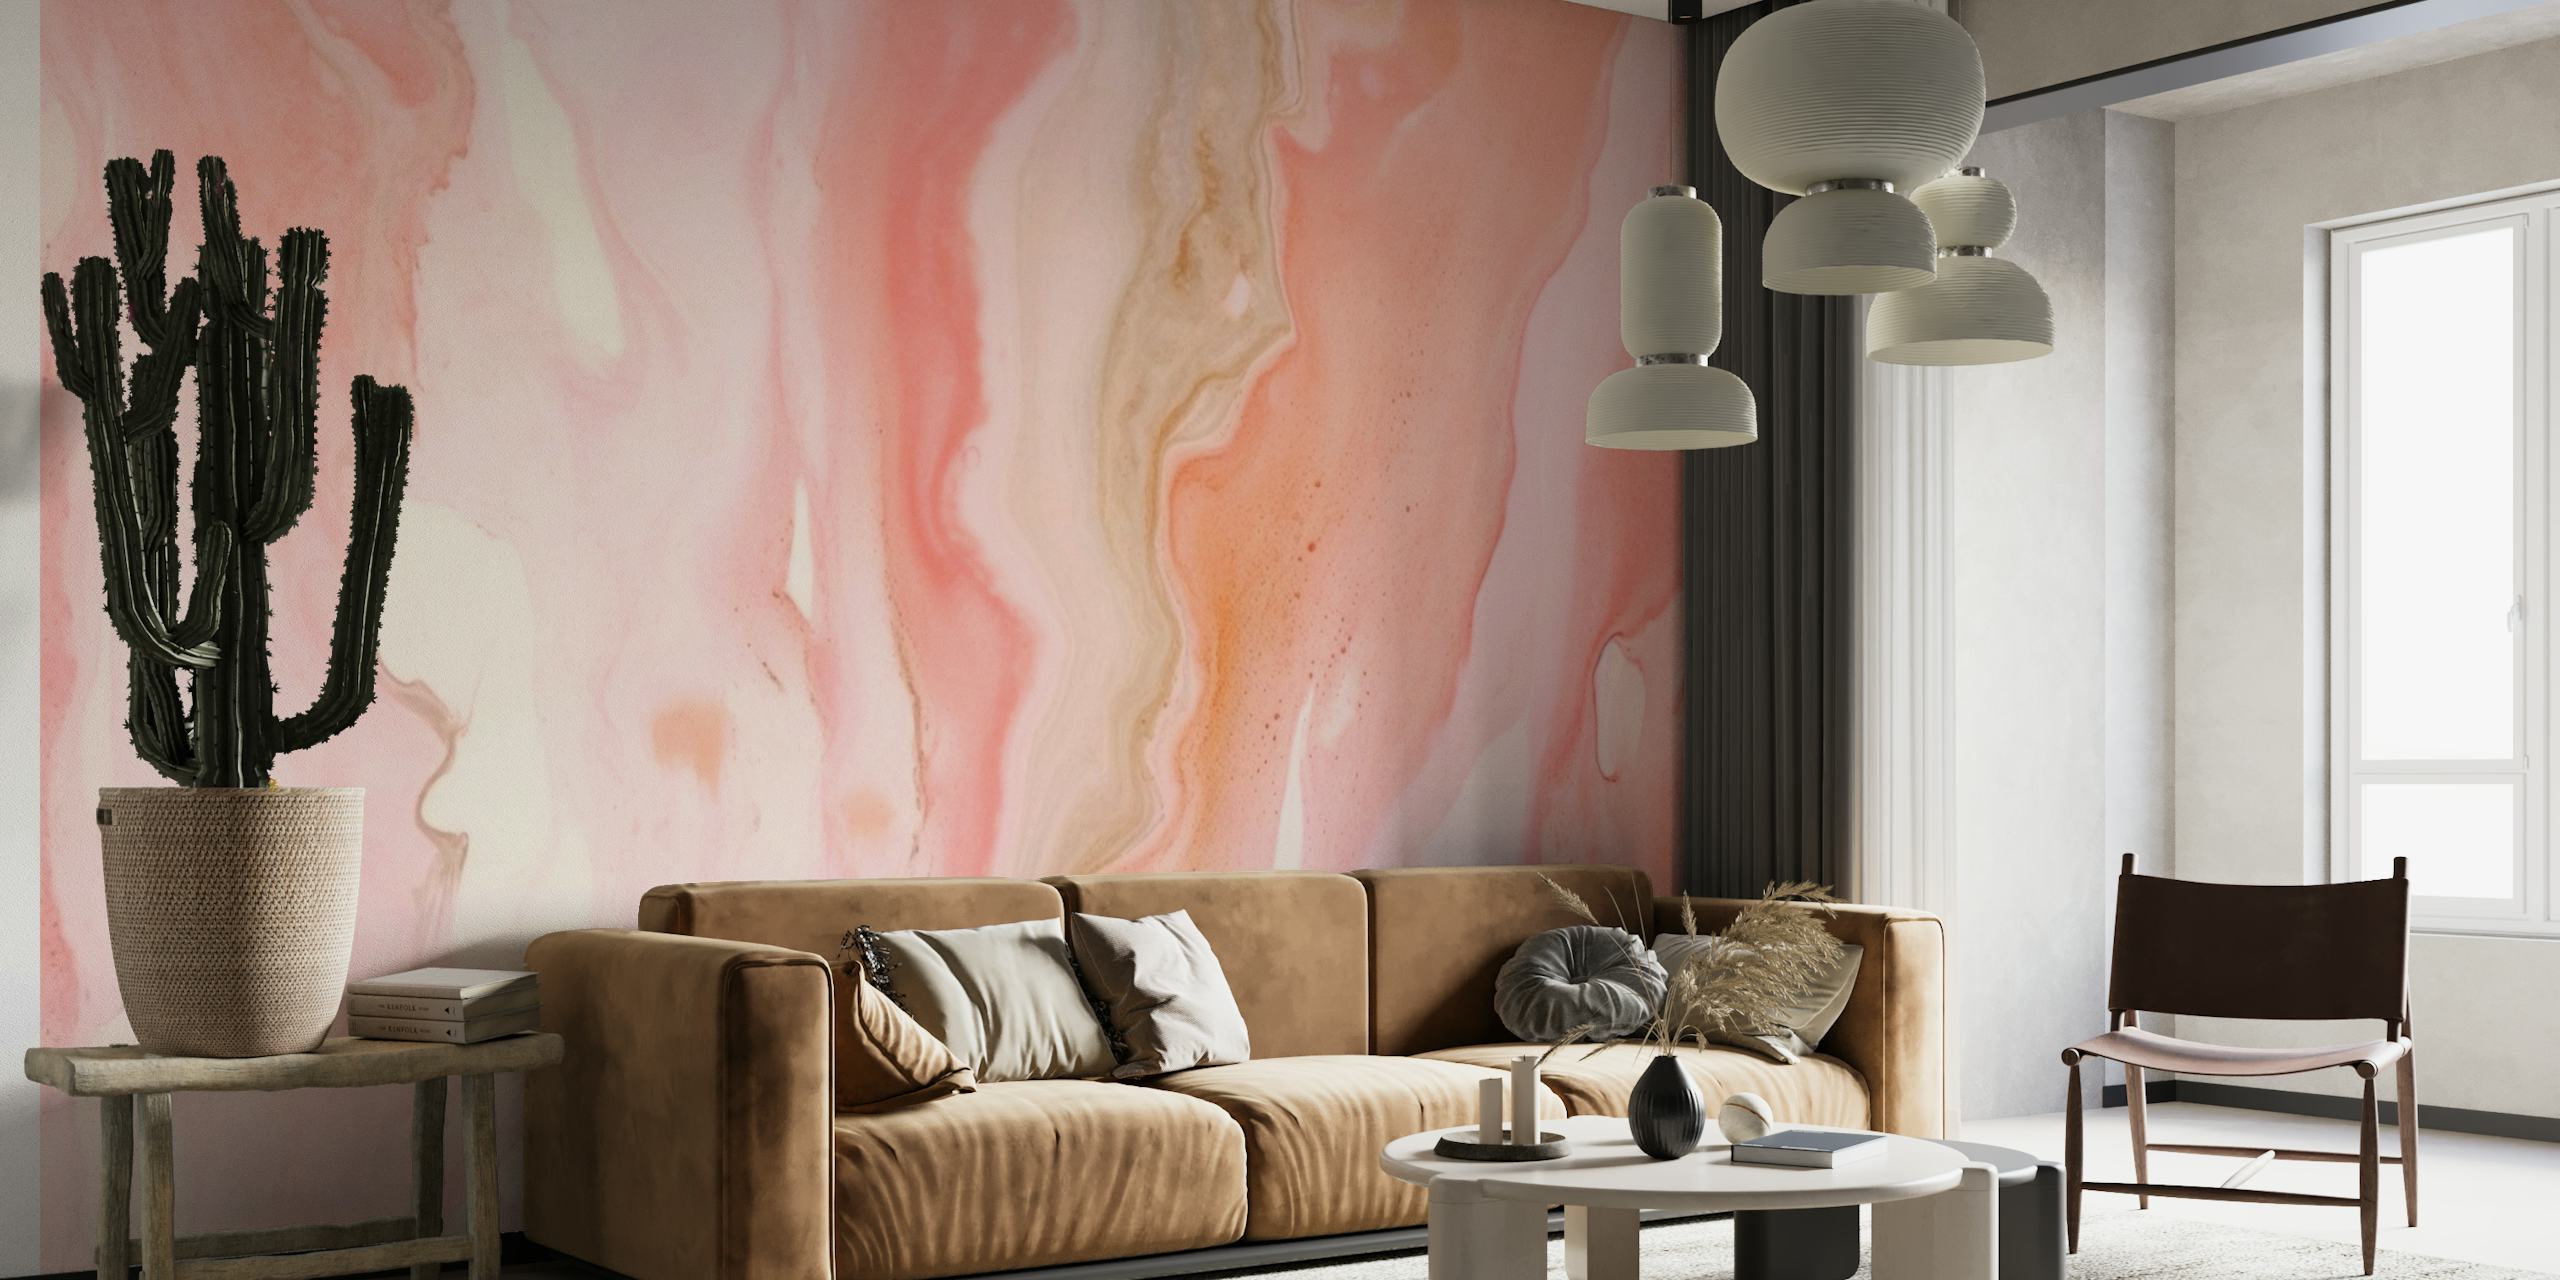 Luksus Marble Blush Pink vægmaleri med elegante hvirvler og nuancer af pink og hvid